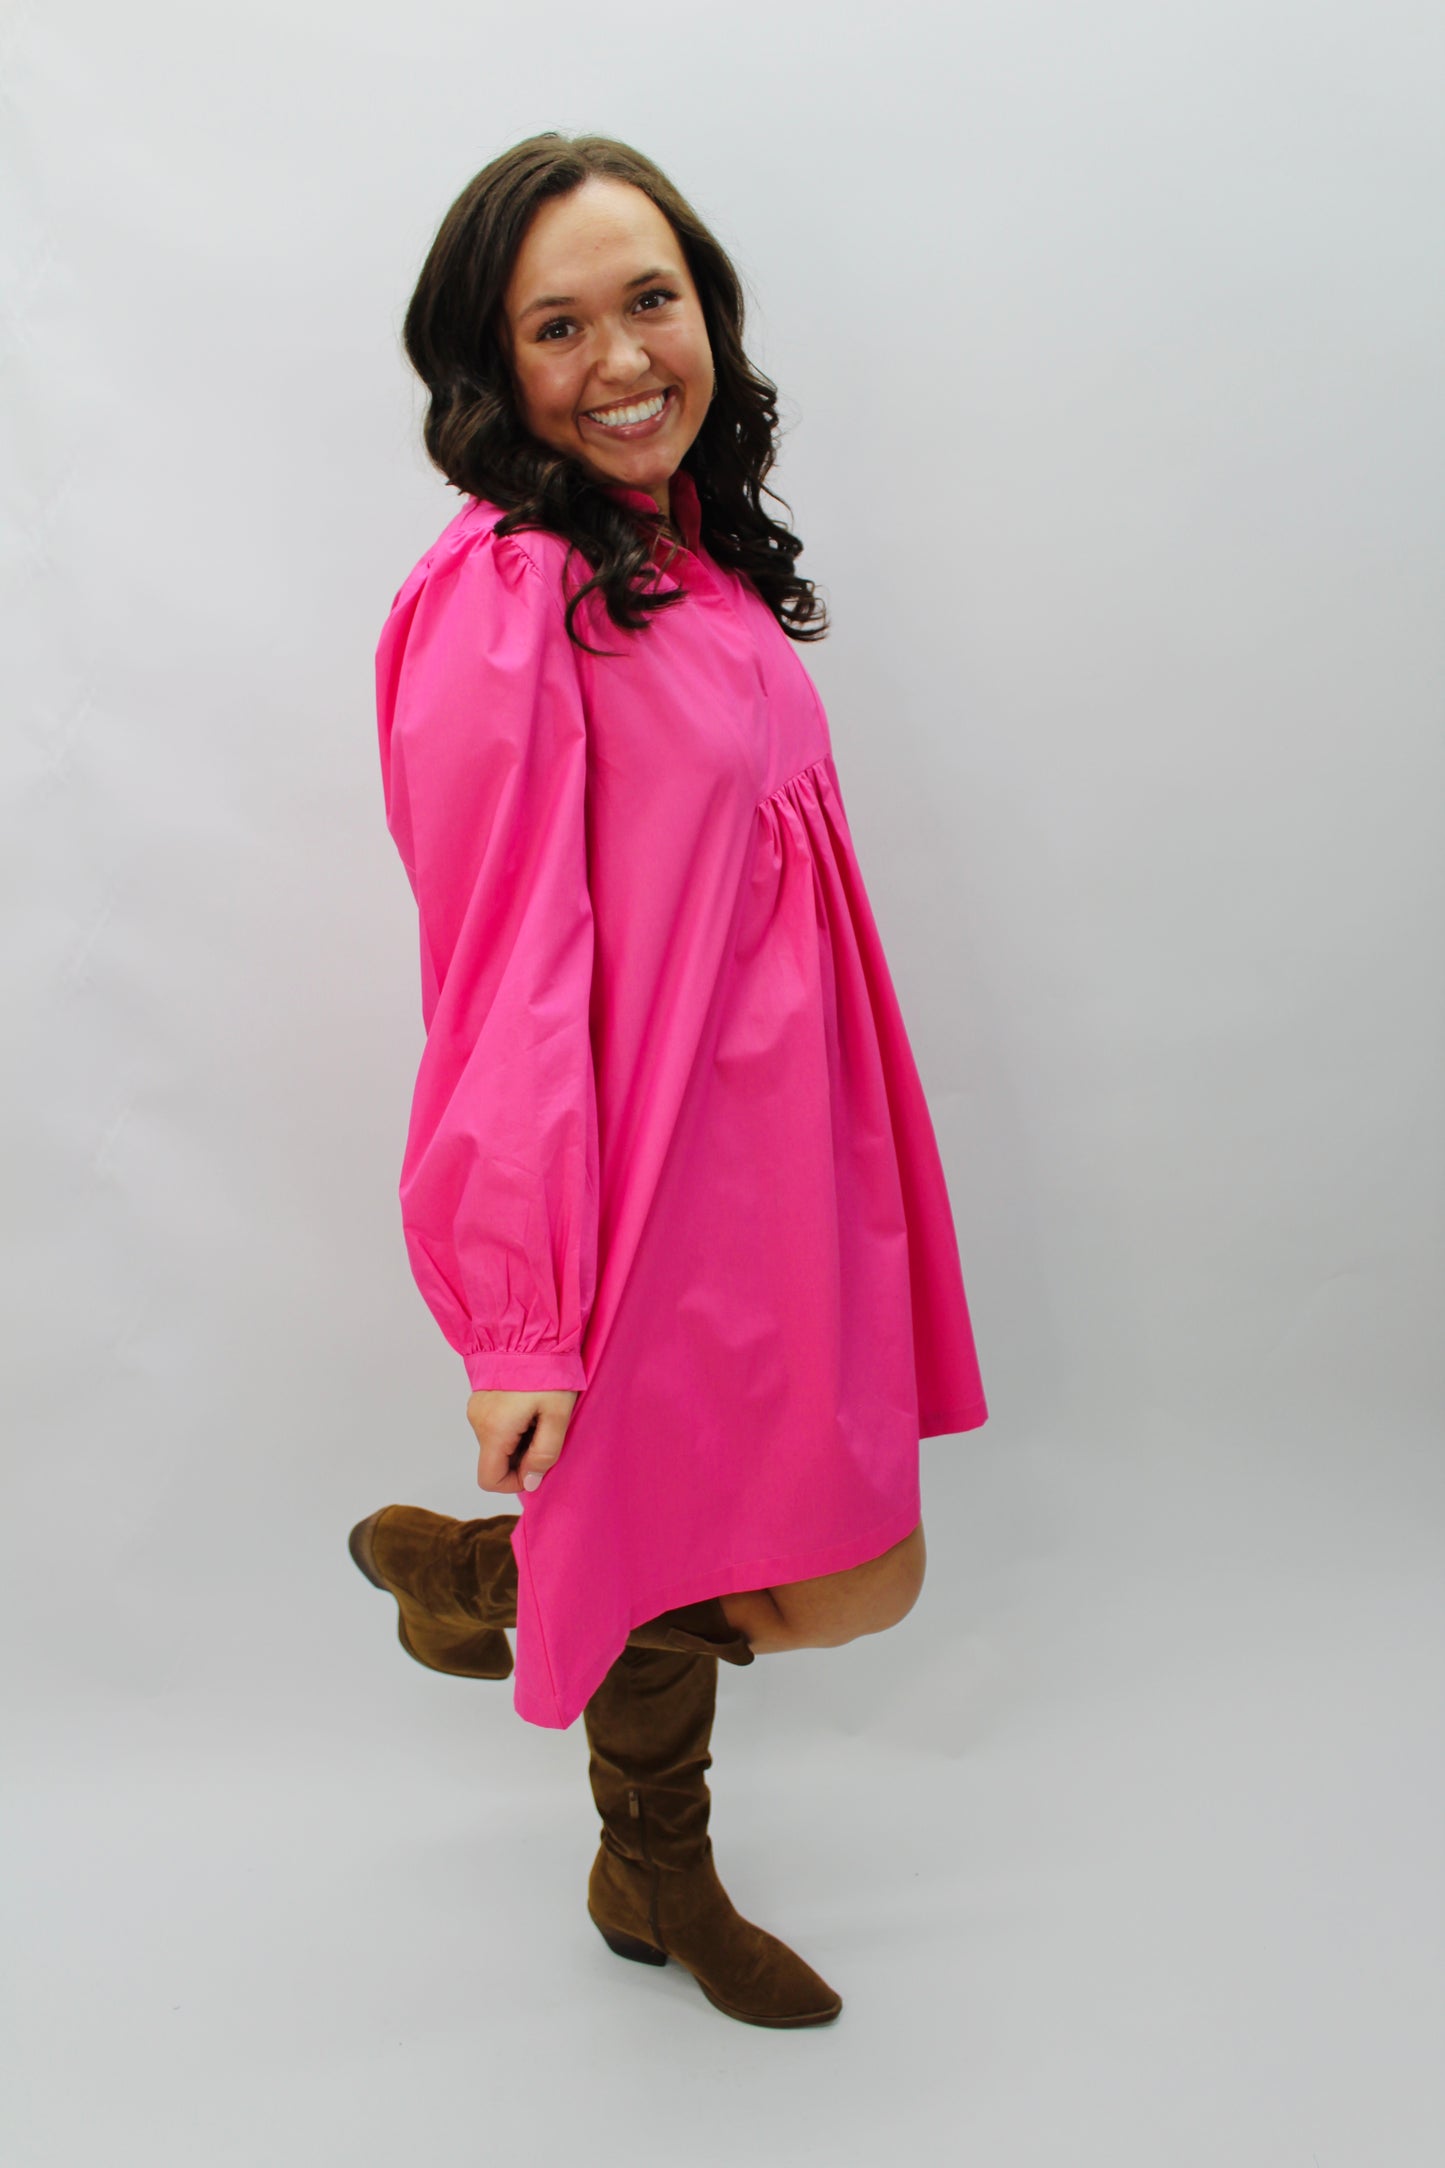 The Dixie Bubble Gum Pink Shirt Dress